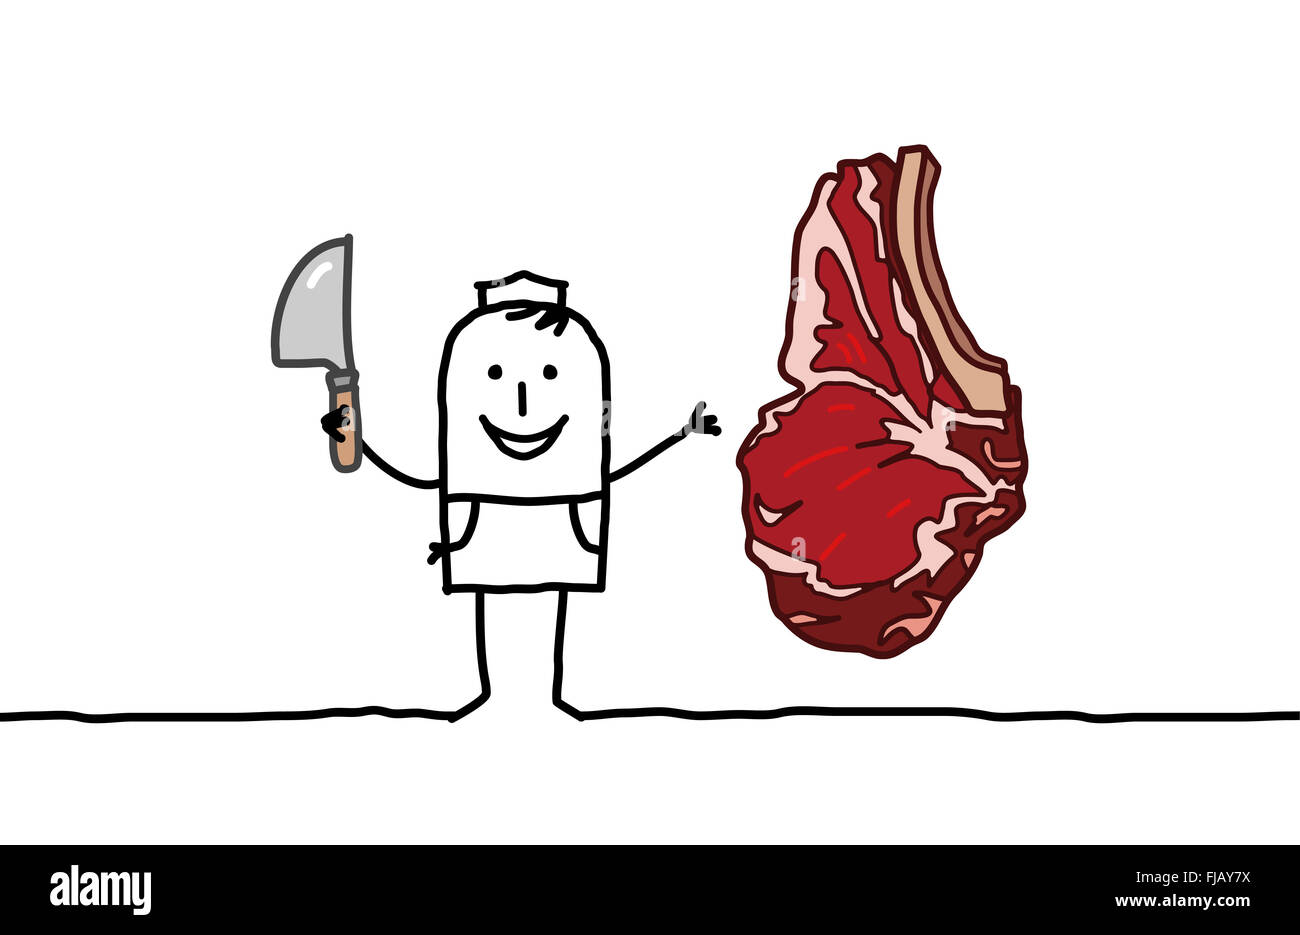 Los personajes de dibujos animados dibujados a mano - carnicería & Beef steak Foto de stock